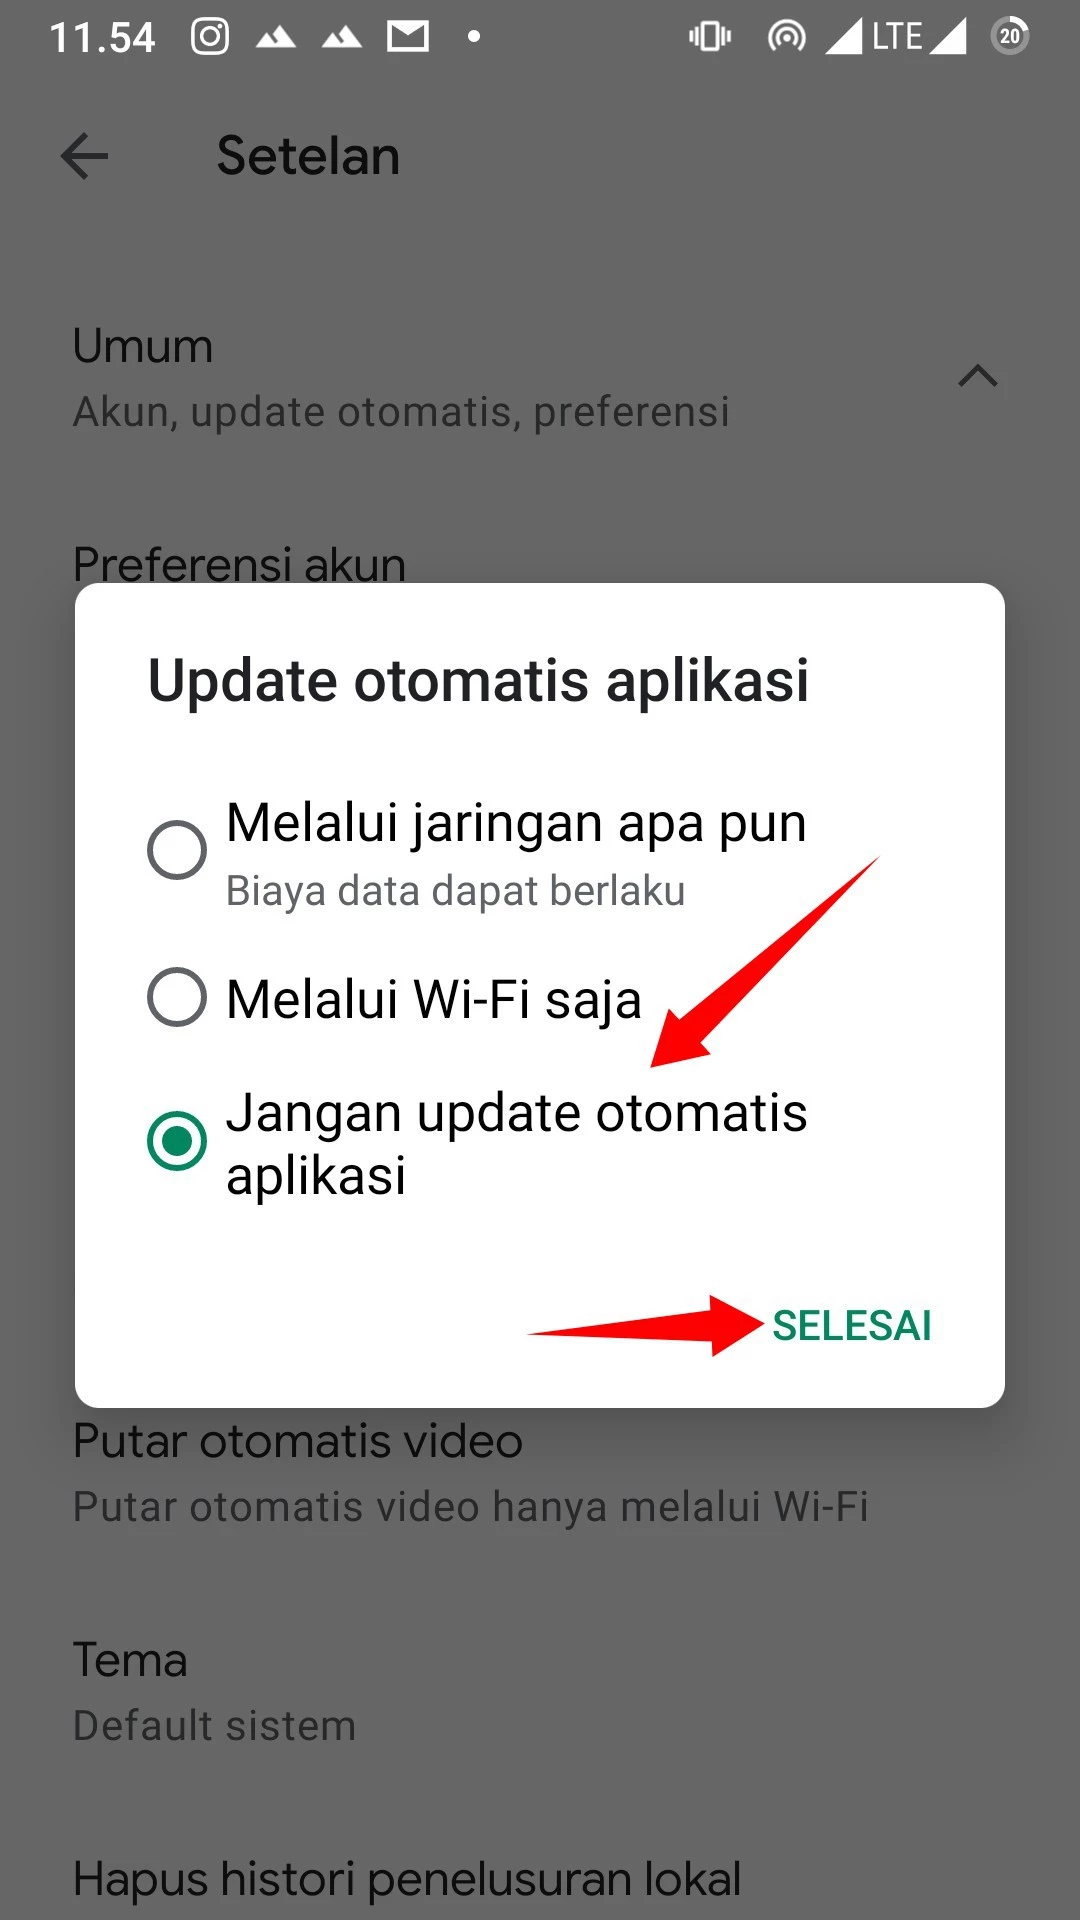 Cara Menonaktifkan Update Otomatis Aplikasi Android by Androbuntu 5